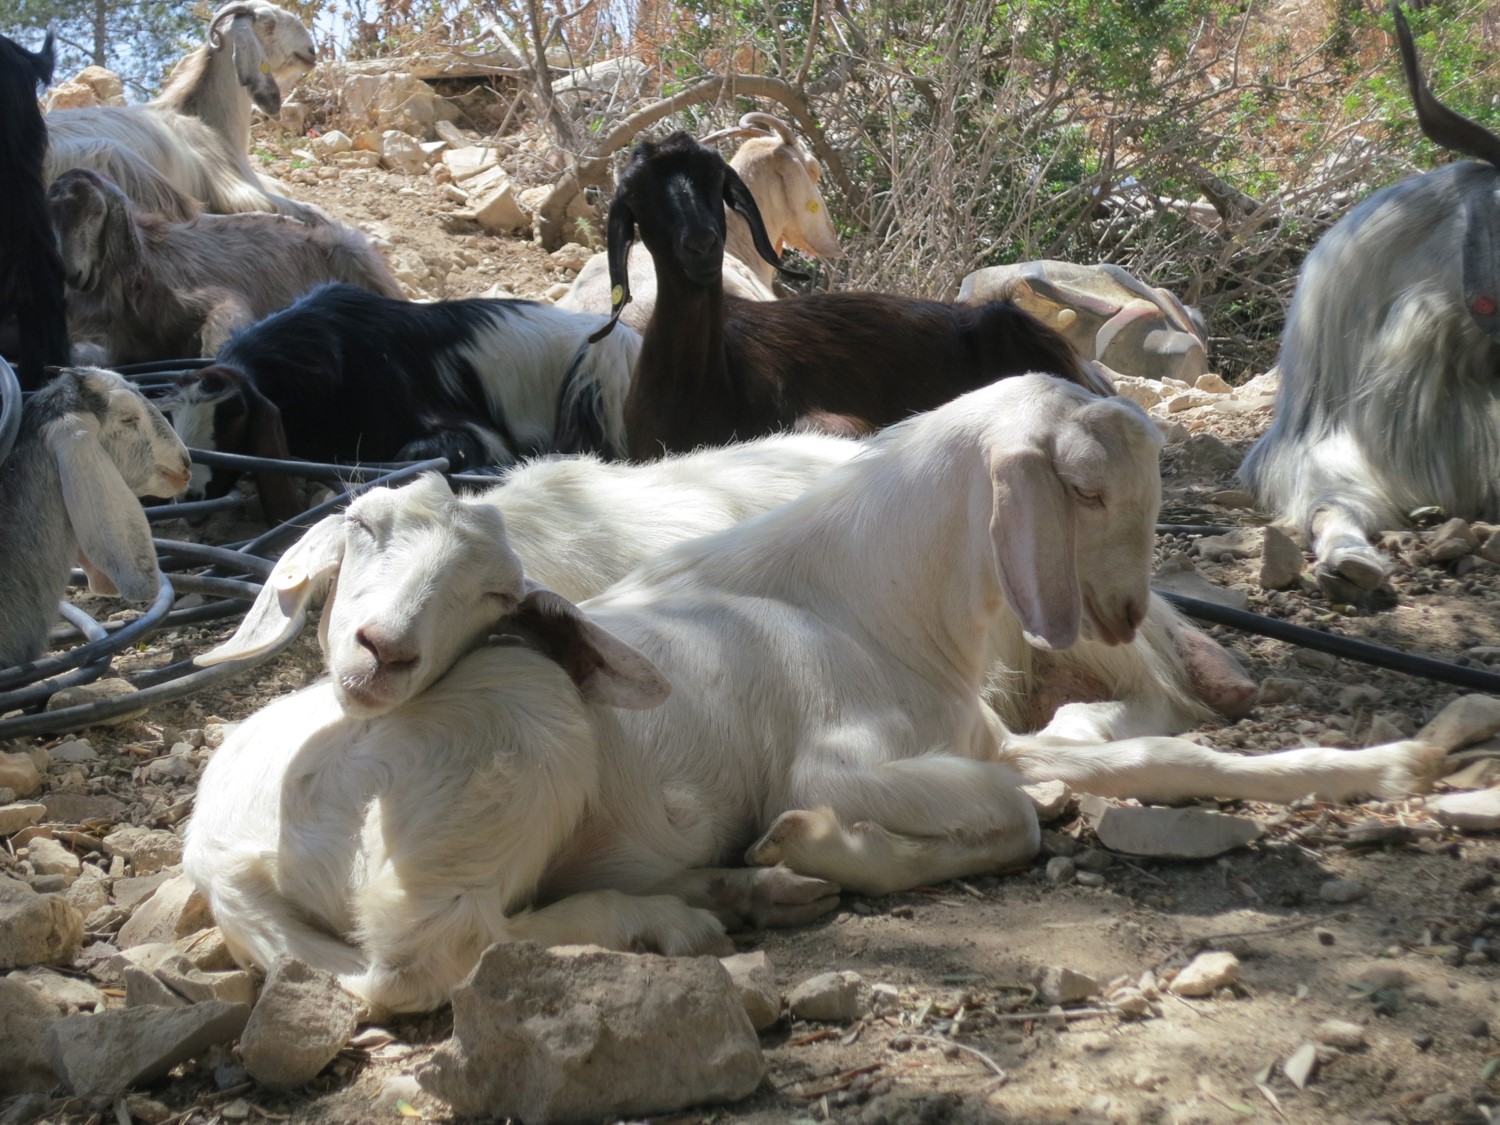 Goats resting